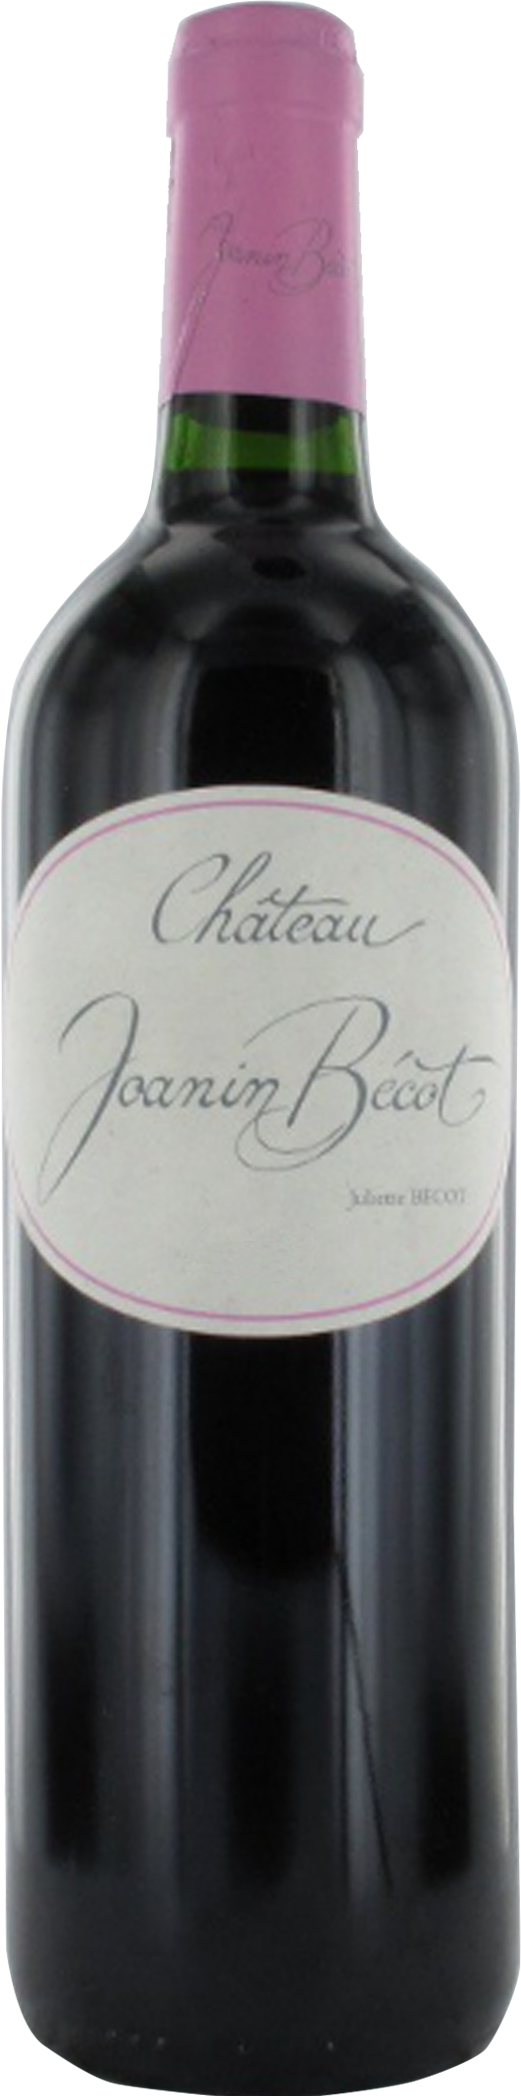 Joanin Bécot 2010 – Castillon – Côtes de Bordeaux